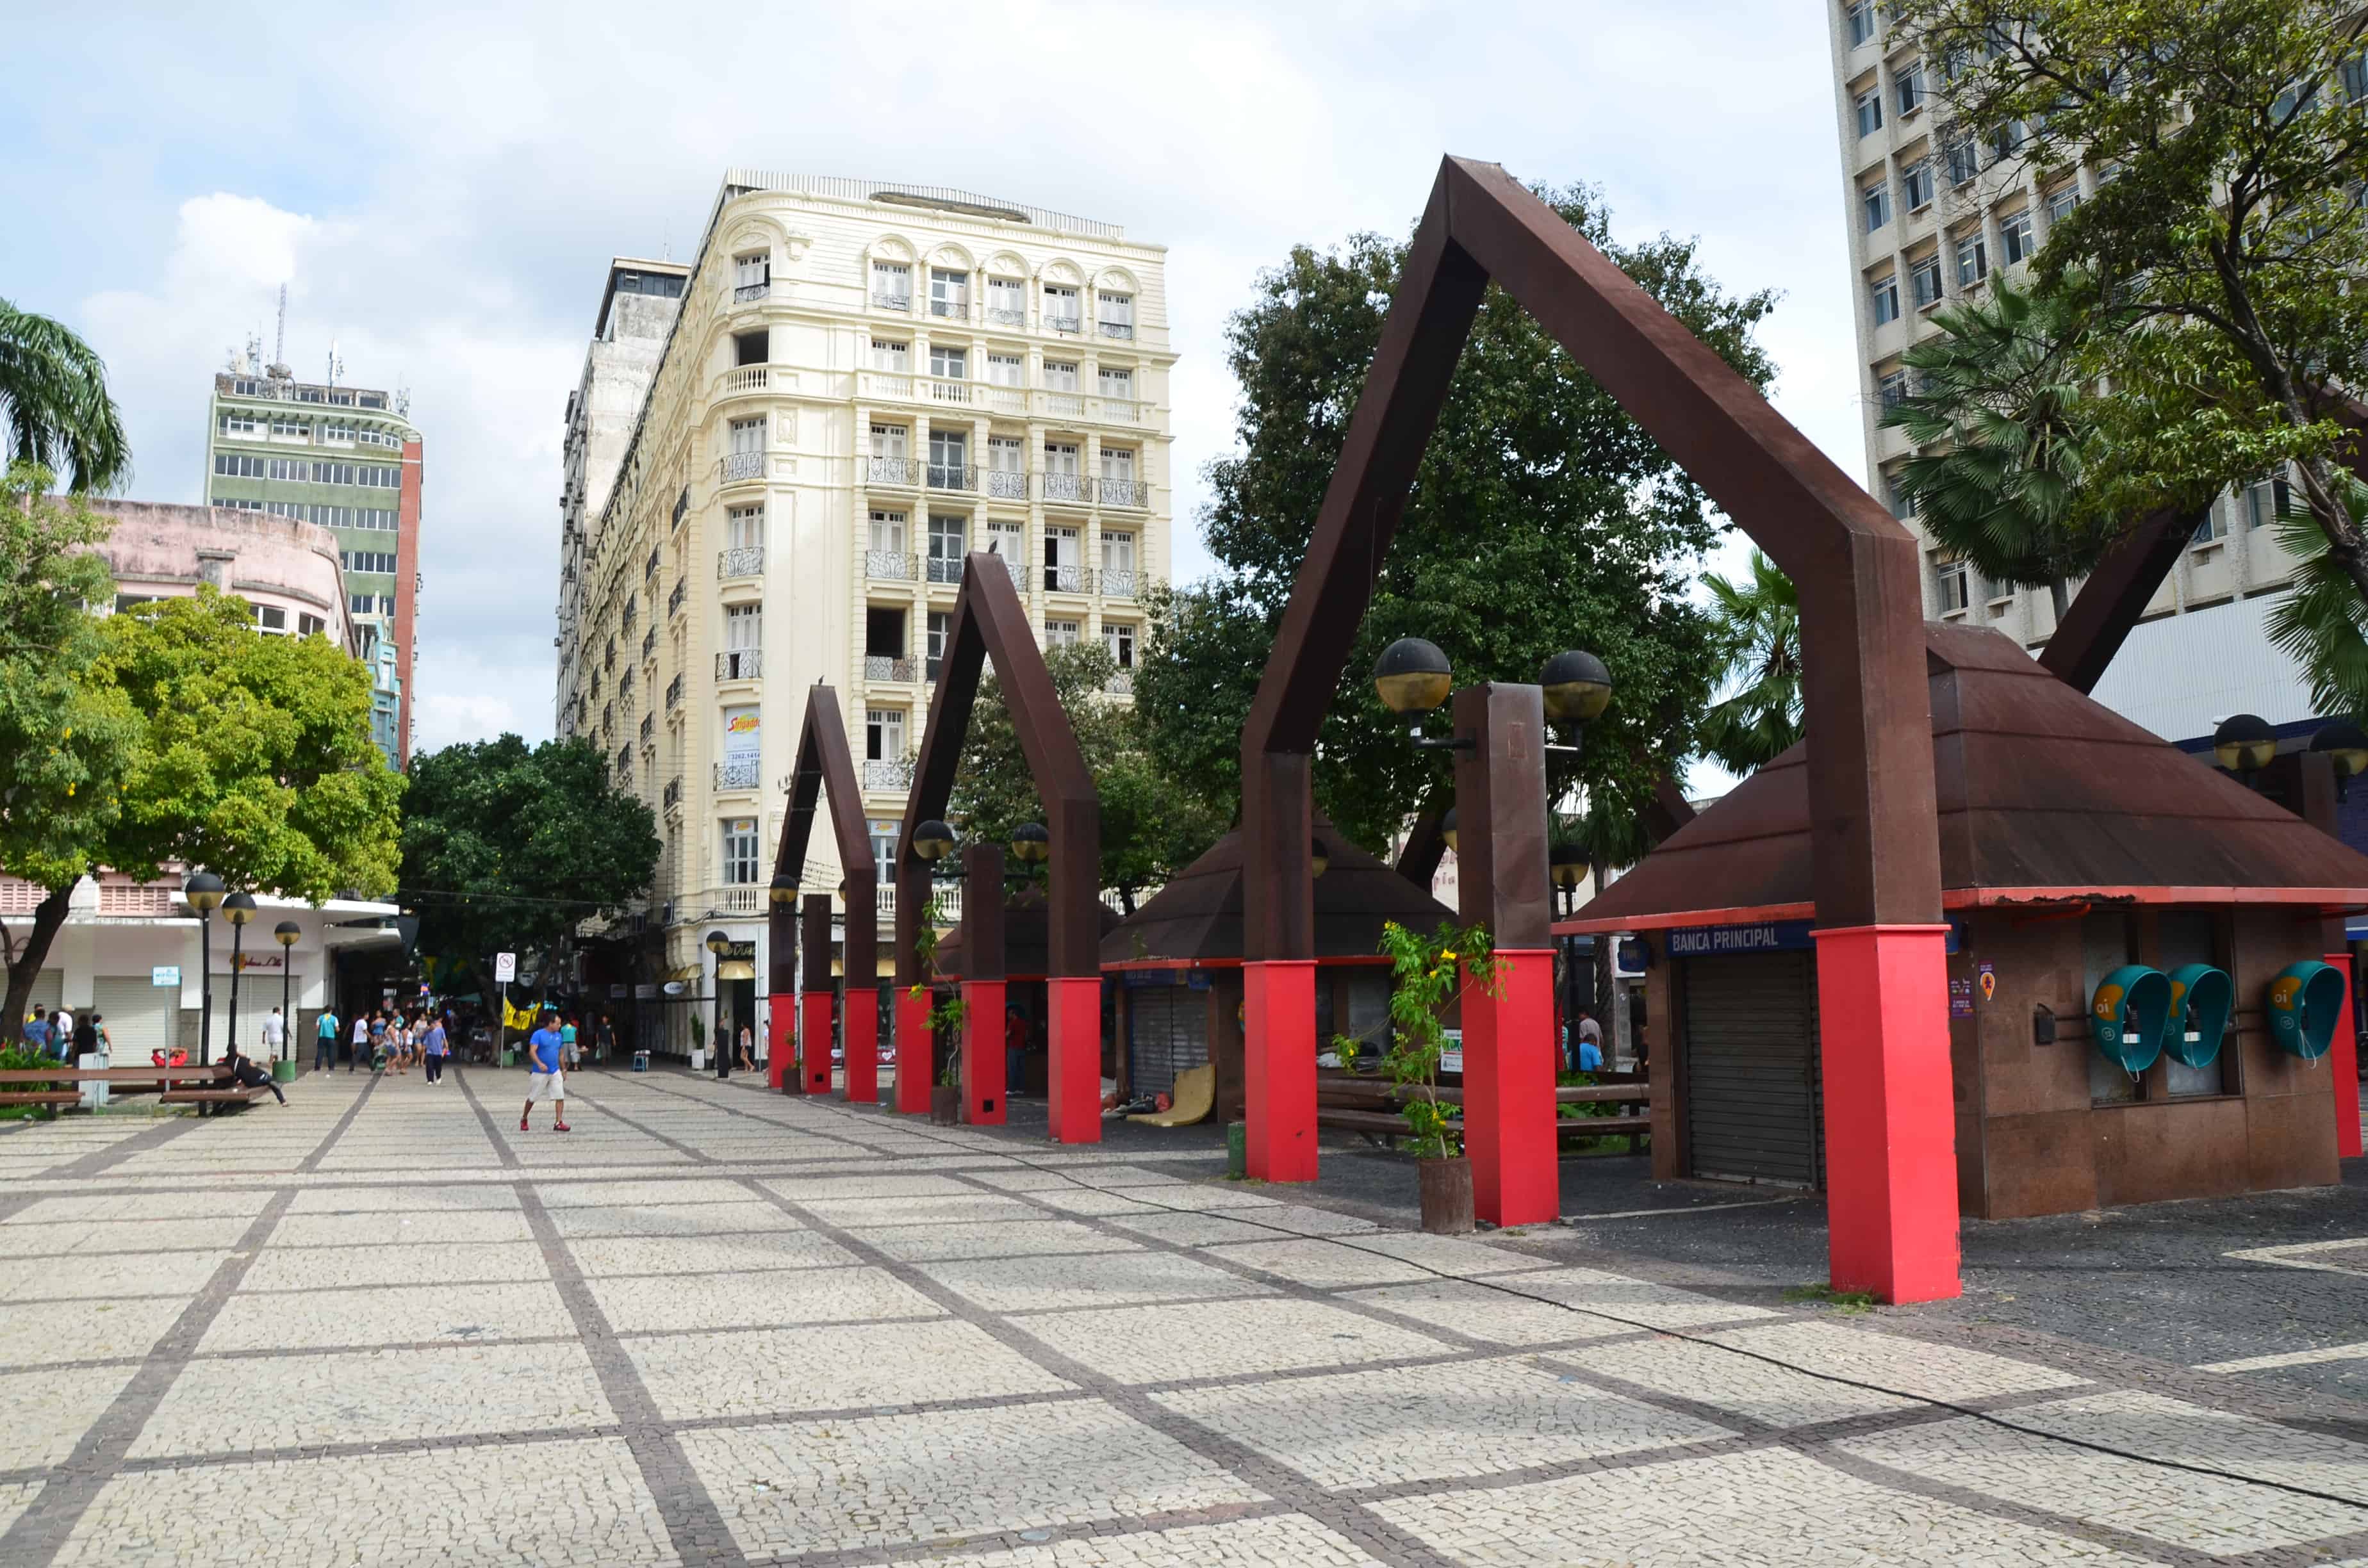 Praça do Ferreira in Fortaleza, Brazil